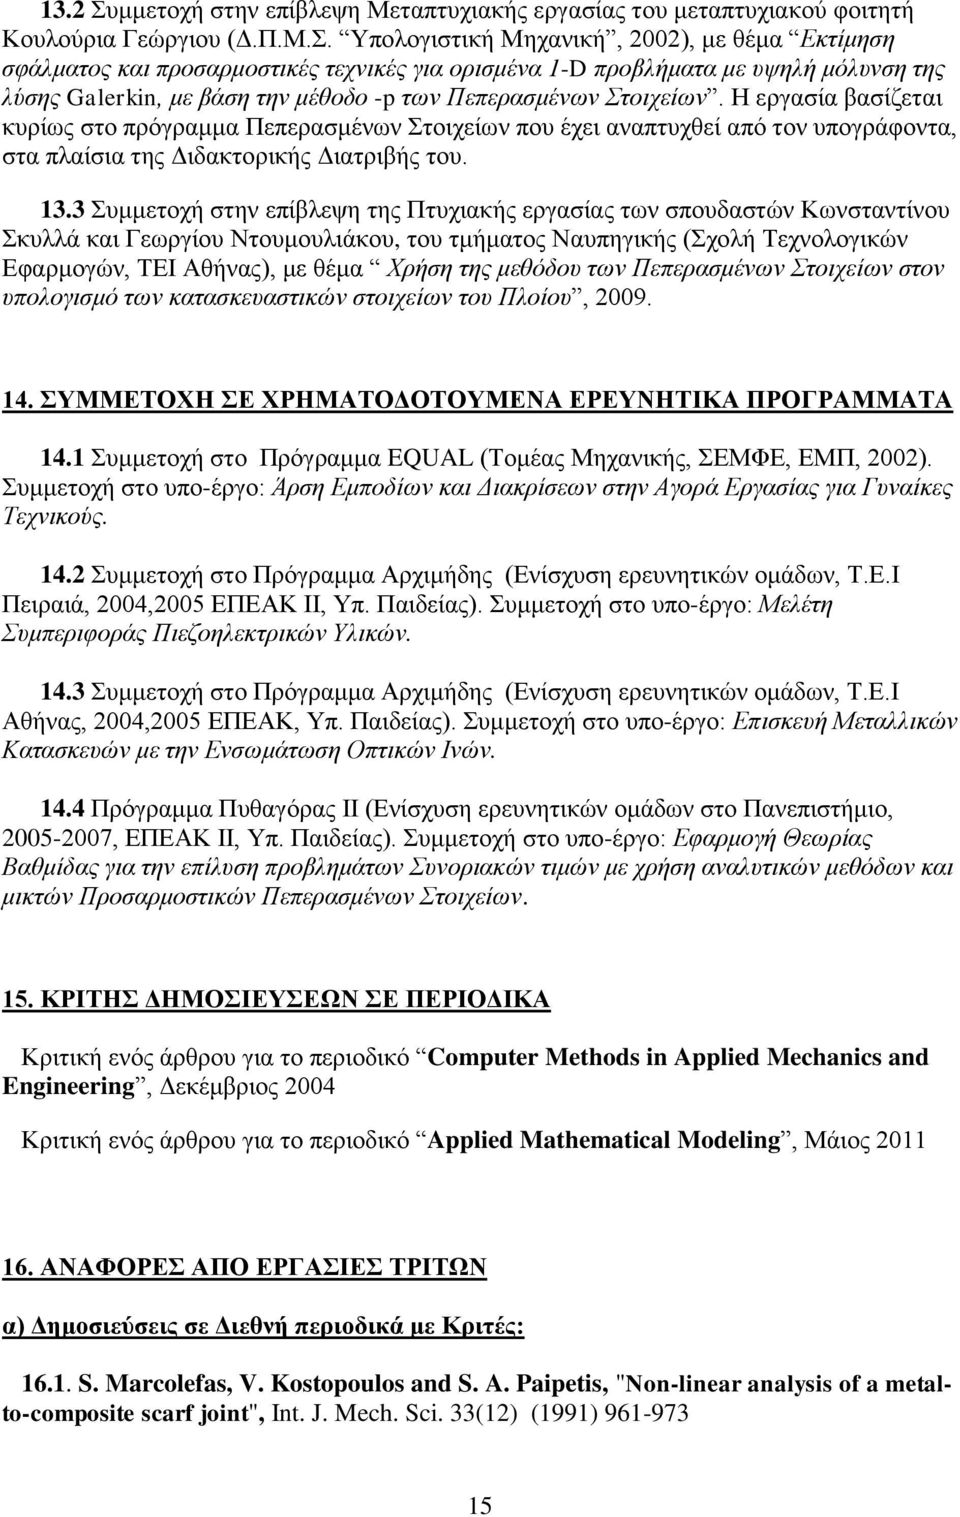 Υπολογιστική Μηχανική, 2002), με θέμα Εκτίμηση σφάλματος και προσαρμοστικές τεχνικές για ορισμένα 1-D προβλήματα με υψηλή μόλυνση της λύσης Galerkin, με βάση την μέθοδο -p των Πεπερασμένων Στοιχείων.